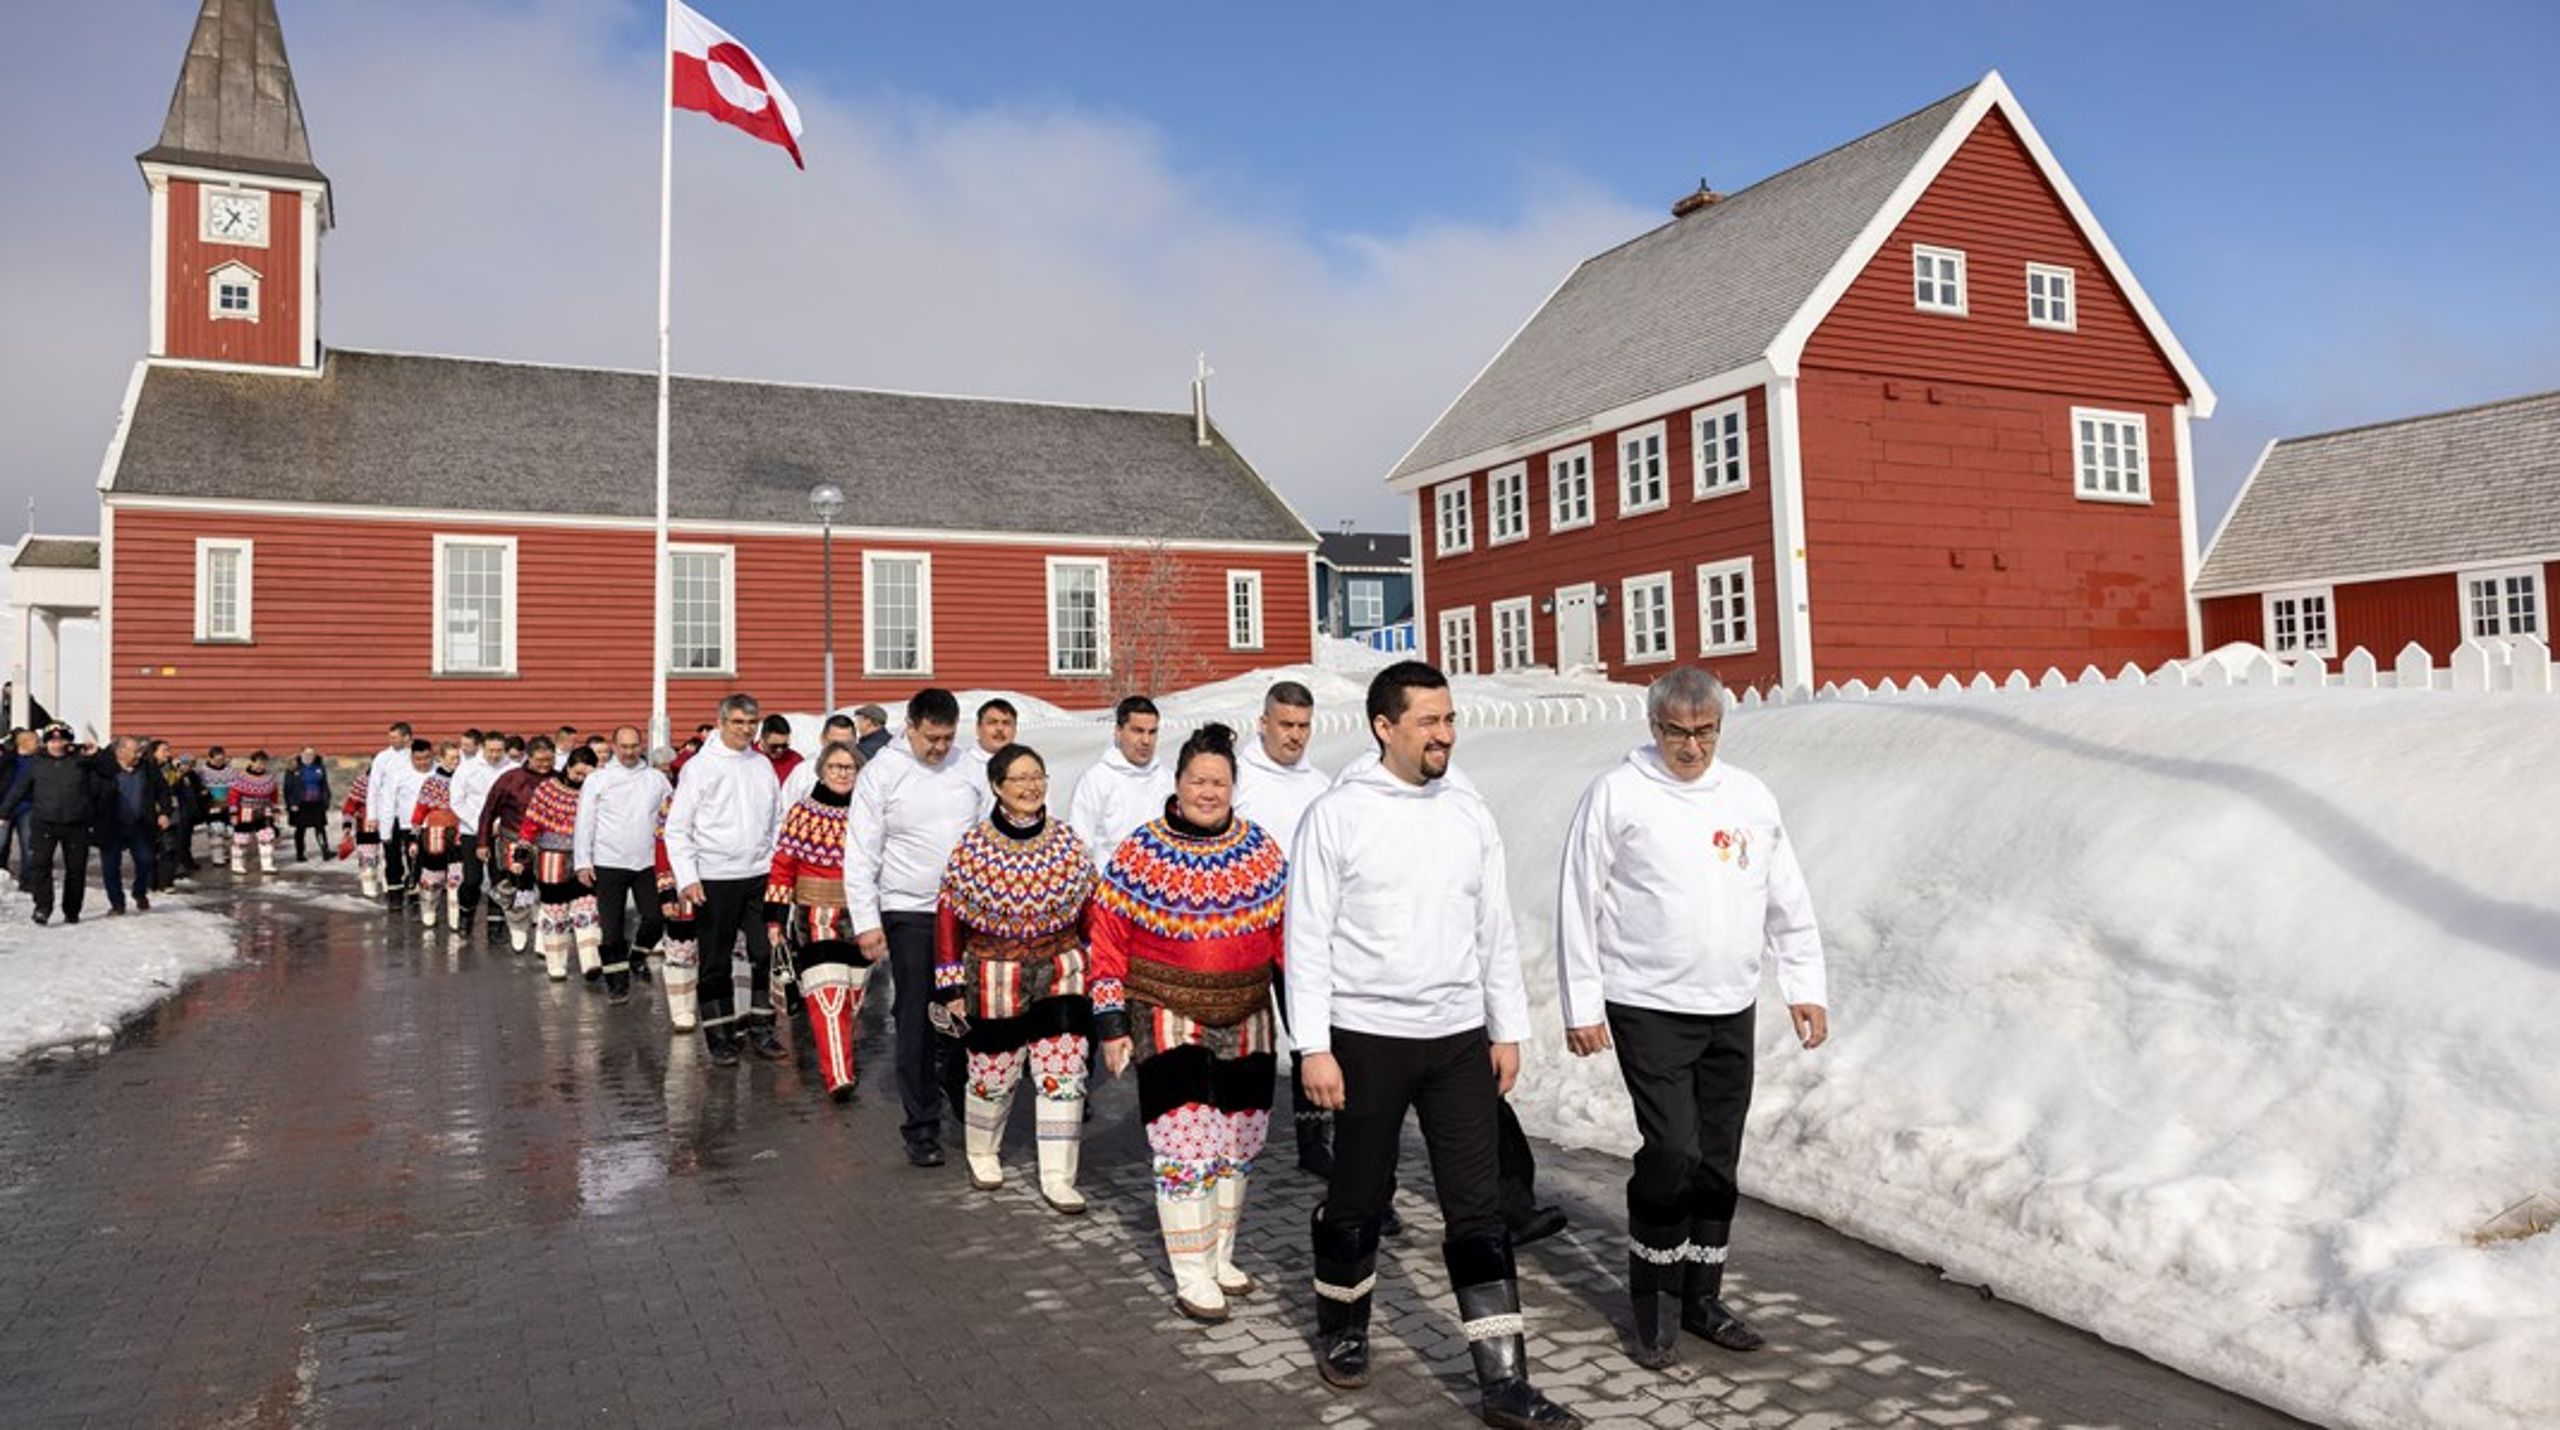 Danmark har en forpligtigelse til at beskytte oprindelige folks rettigheder - heriblandt inuitters. Men grønlændere udsættes for diskrimination i Danmark, og derfor svigter vi de forpligtigelser, skriver Louise Holck.